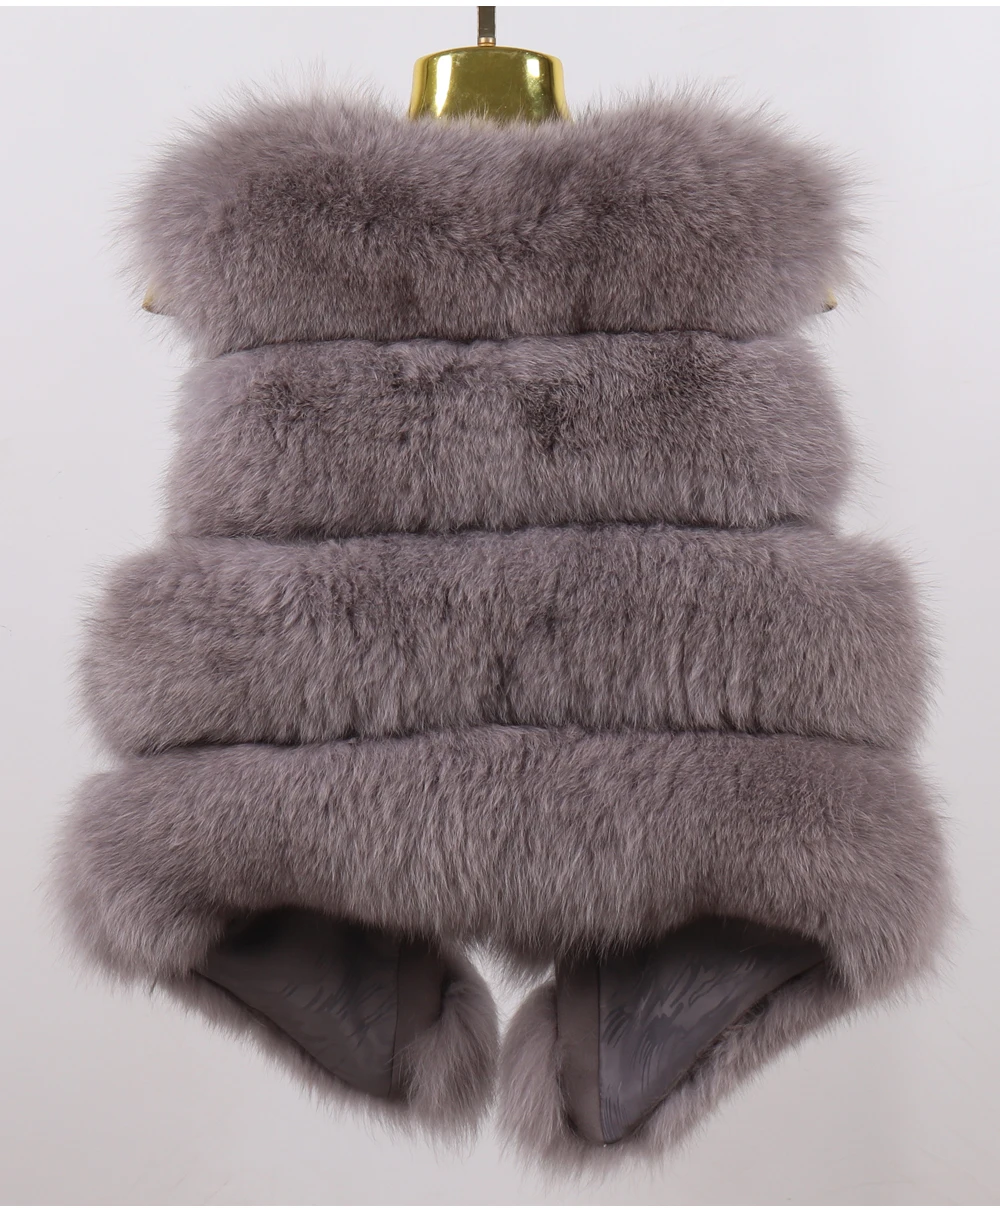 Женский жилет из натурального меха лисы зима осень качество настоящий жилет на лисьем меху пальто женский бренд натуральный мягкий настоящий жилет из лисьего меха